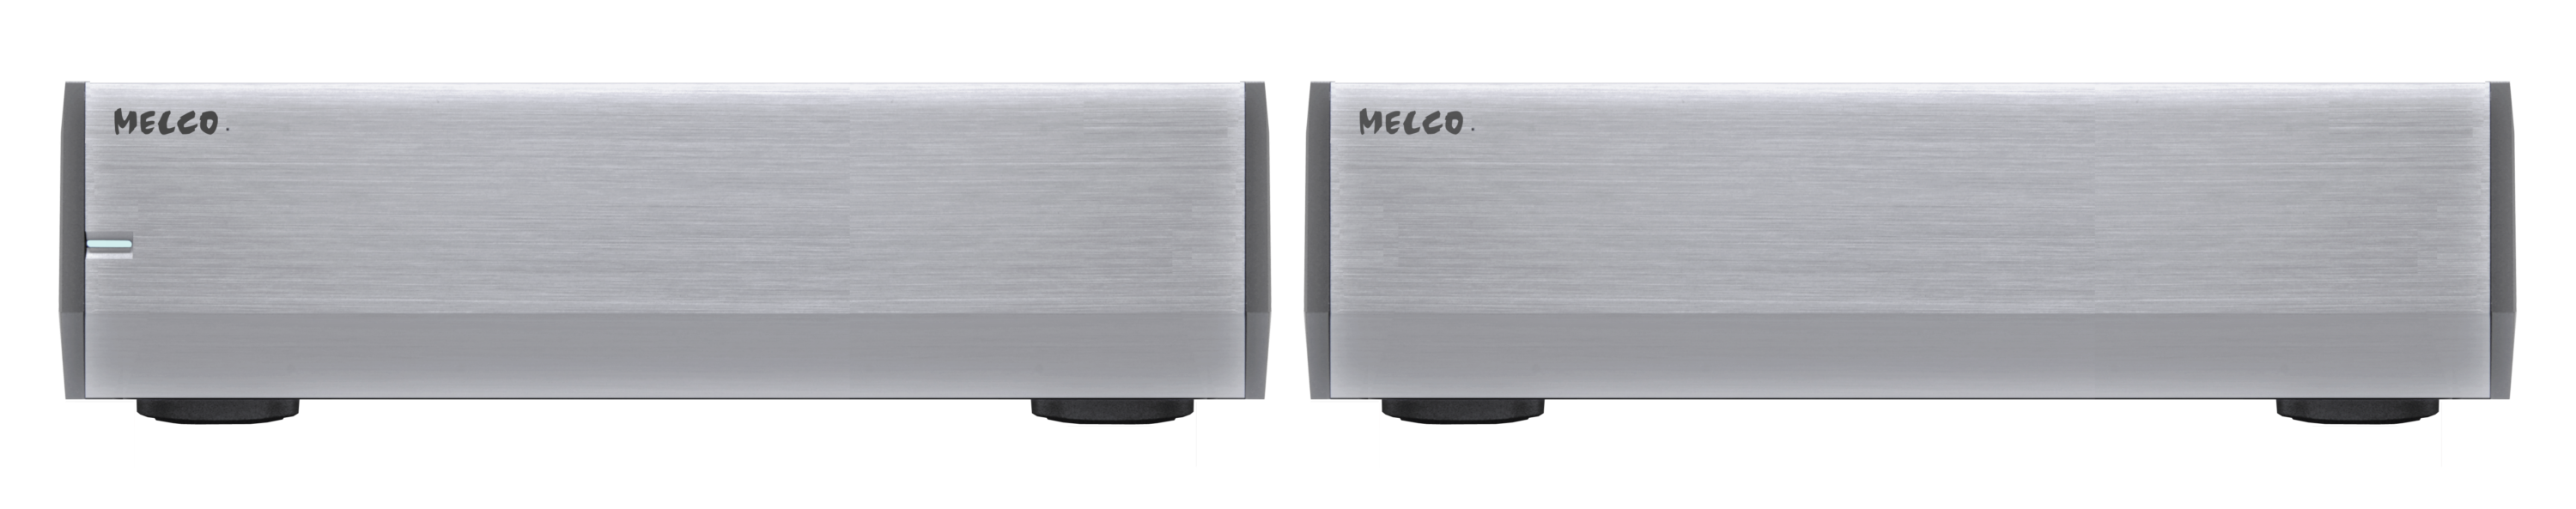 Melco S10 Referenz Switch mit ausgelagertem Netzteil